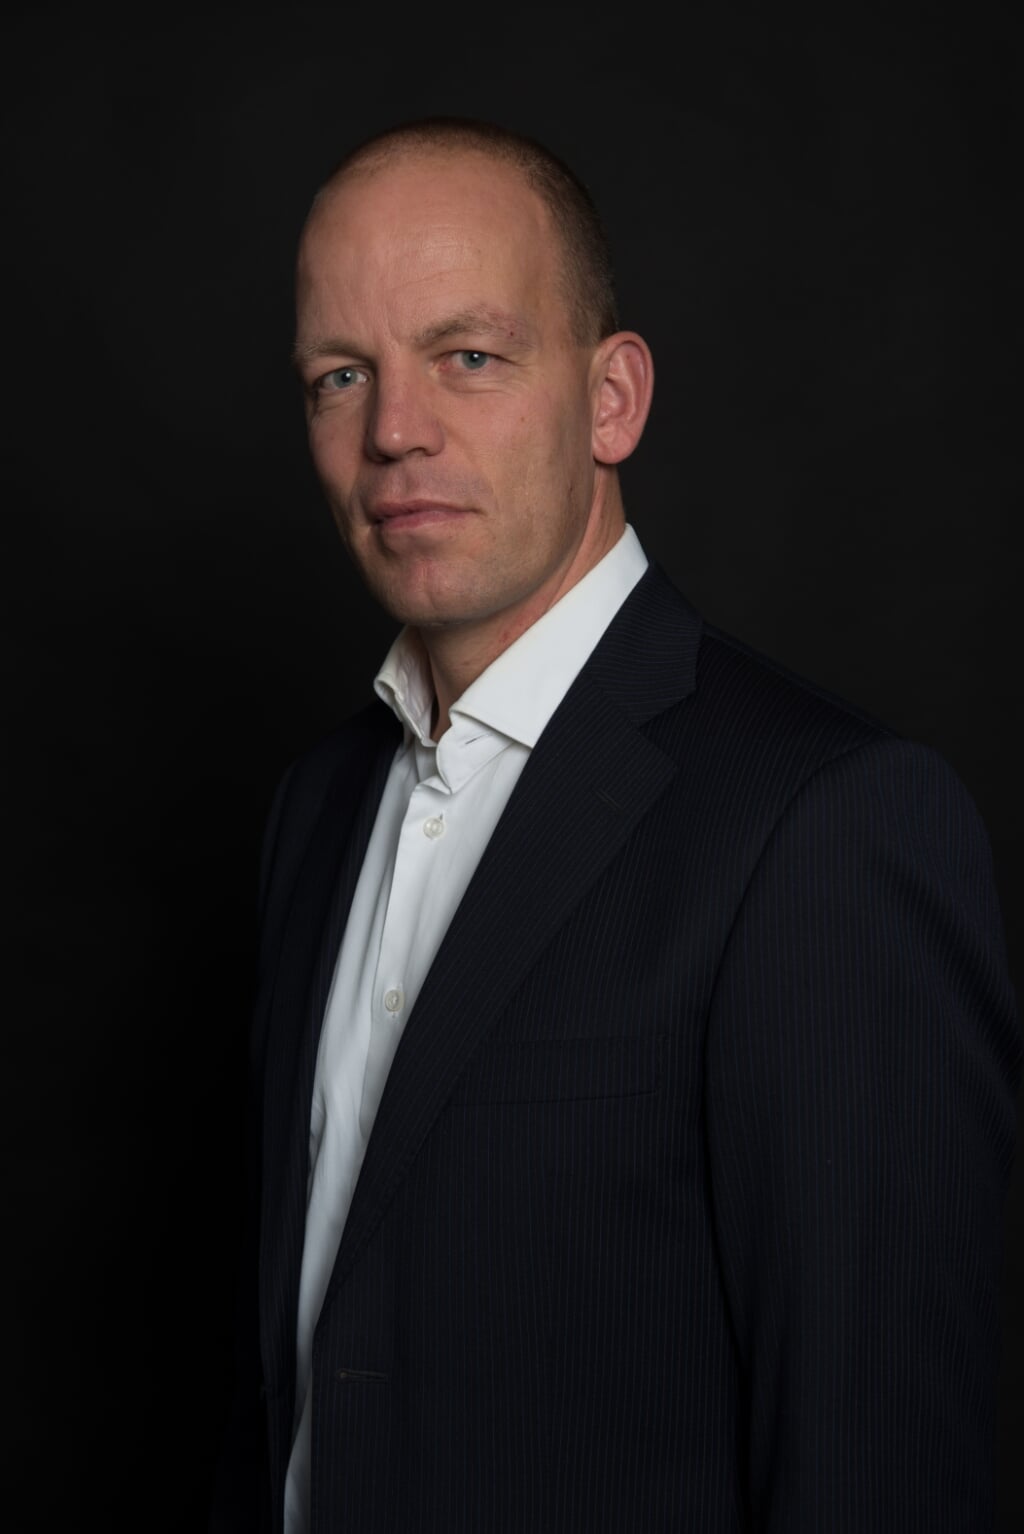 ArJan Wille is de nieuwe directeur van Alphen Vitaal.